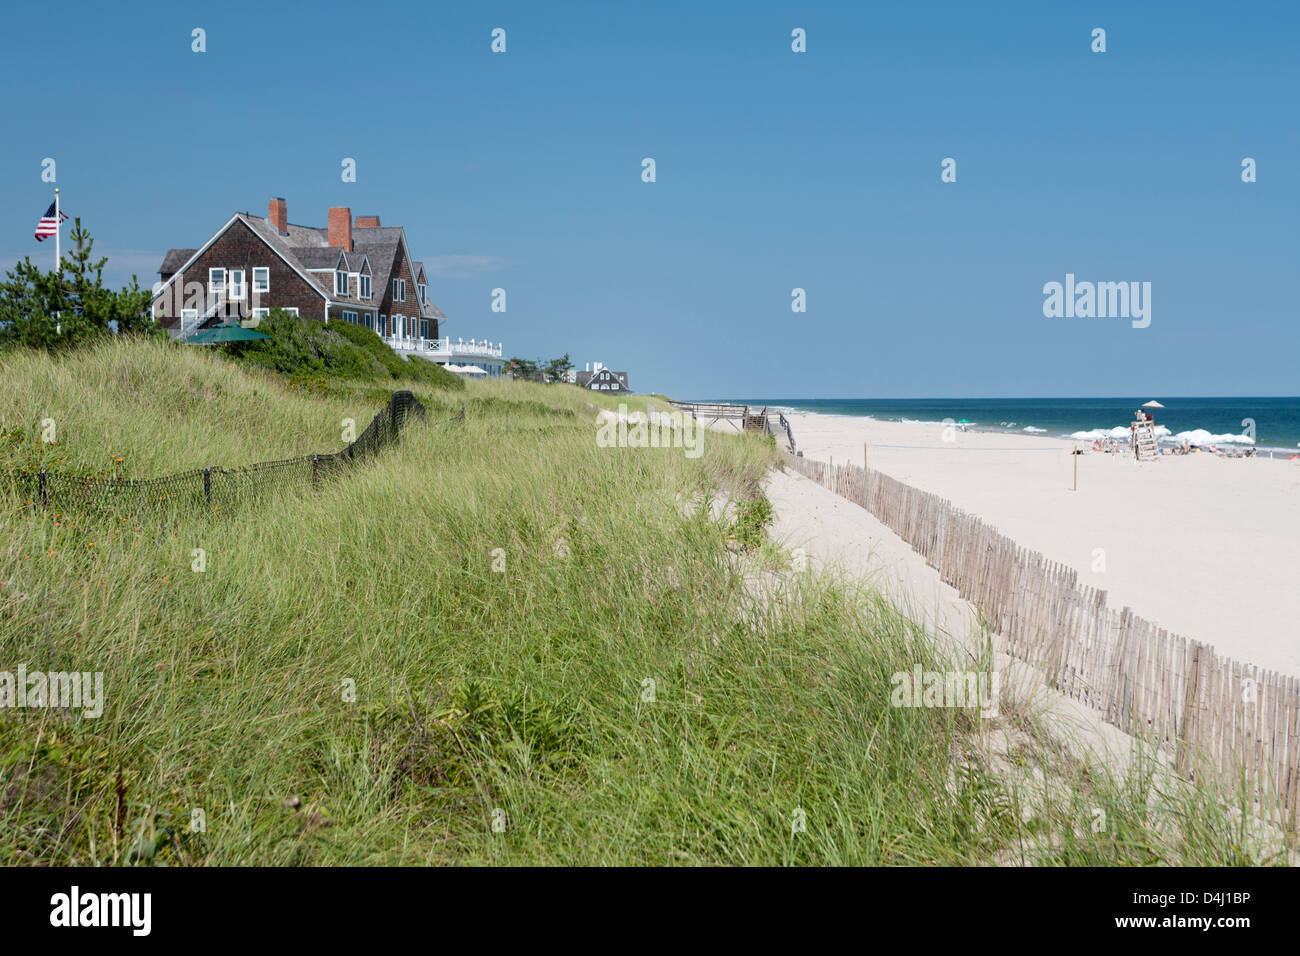 Il BEACH HOUSE SU DUNE ATLANTIC BEACH AMAGANSETT SUFFOLK COUNTY LONG ISLAND NELLO STATO DI NEW YORK STATI UNITI D'AMERICA Foto Stock